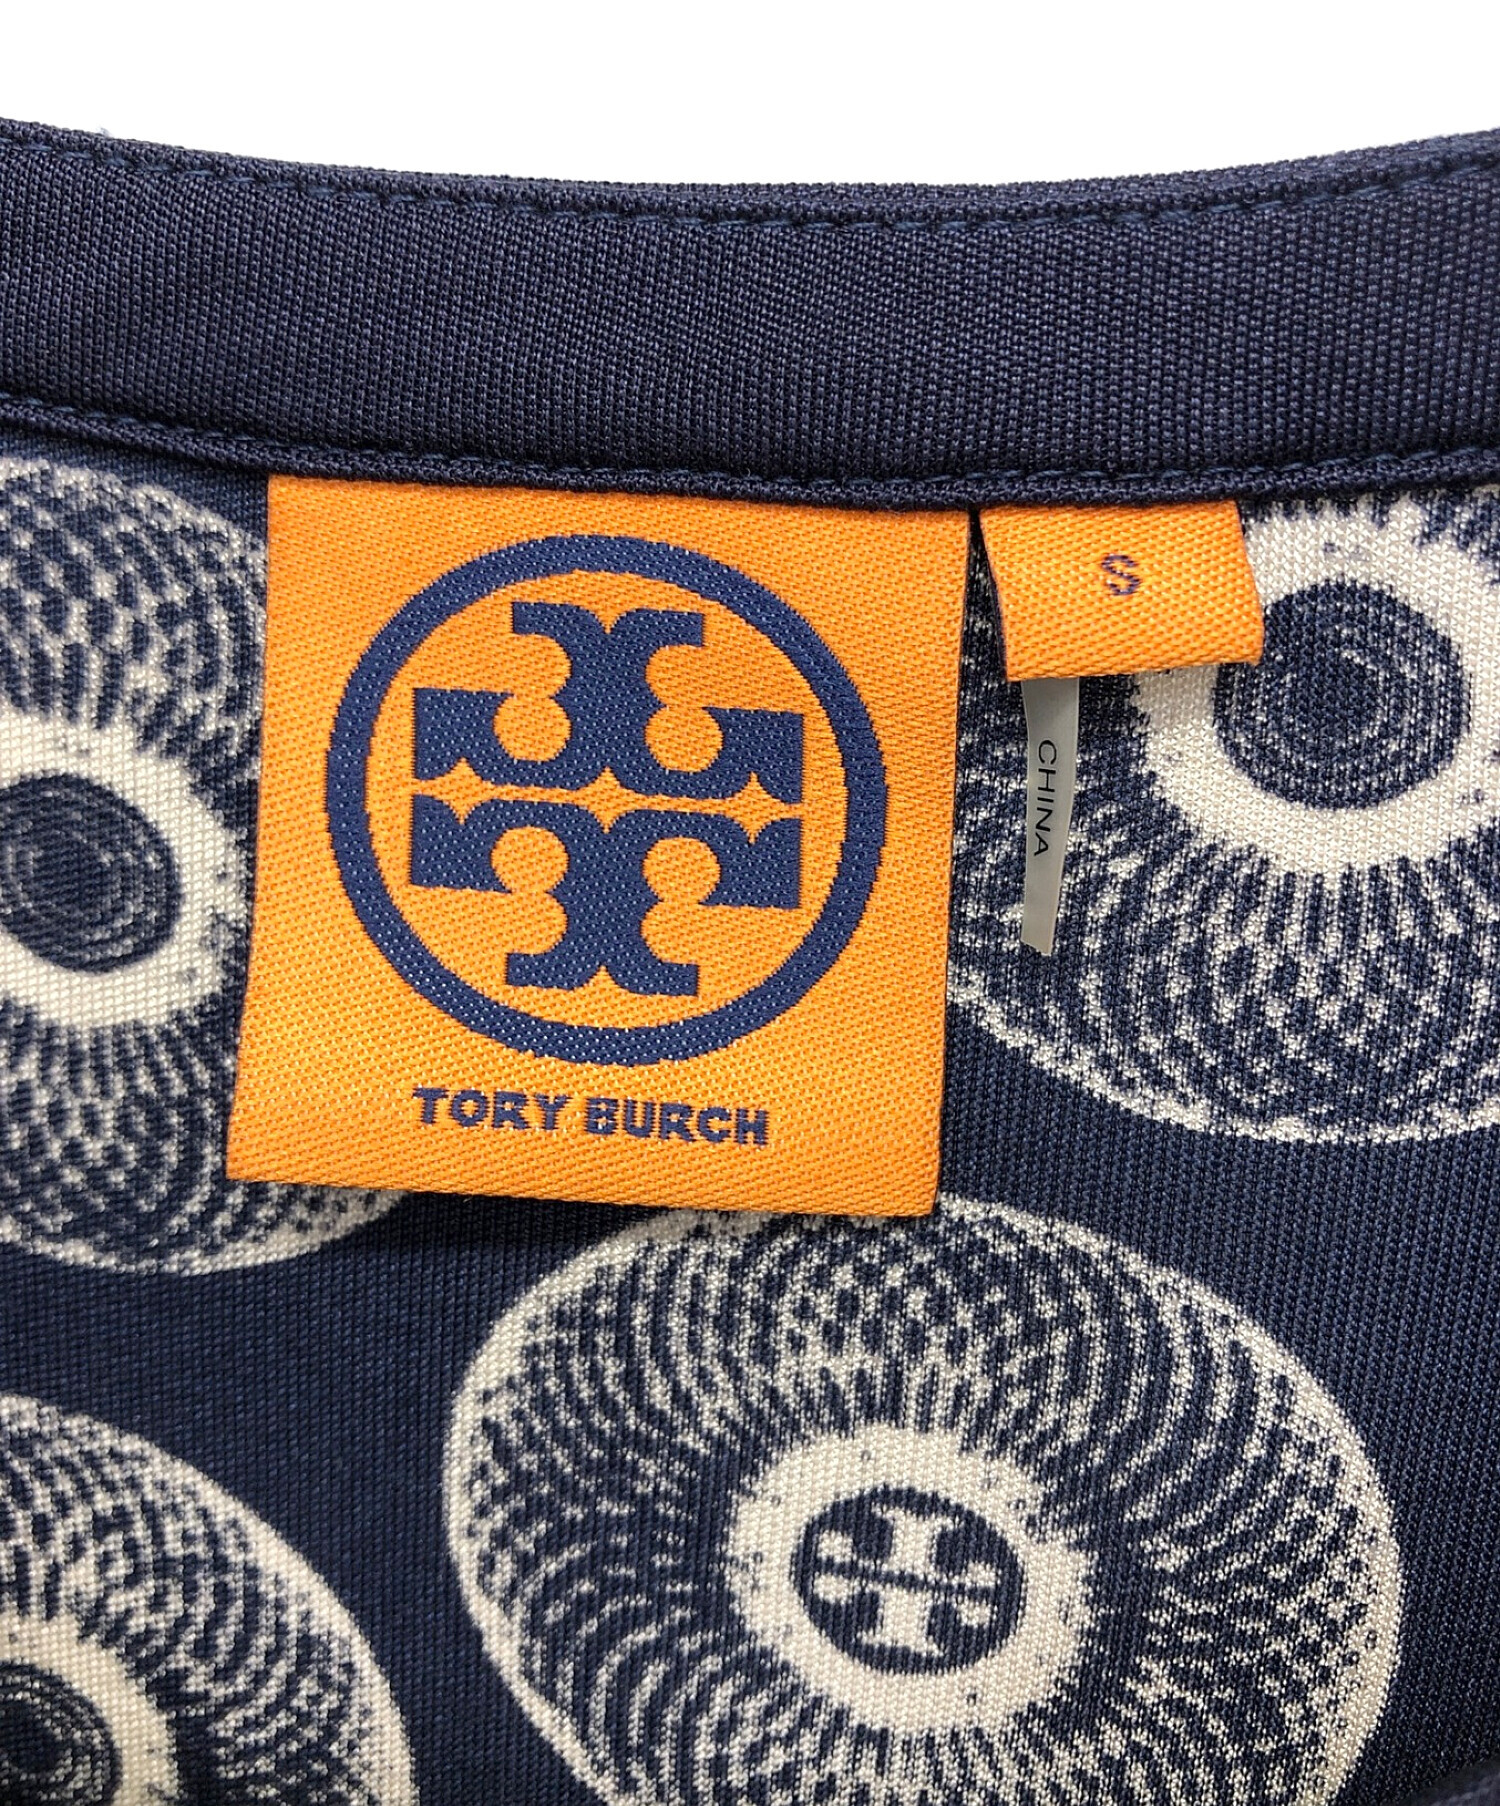 TORY BURCH (トリーバーチ) 総柄ワンピース ネイビー サイズ:S